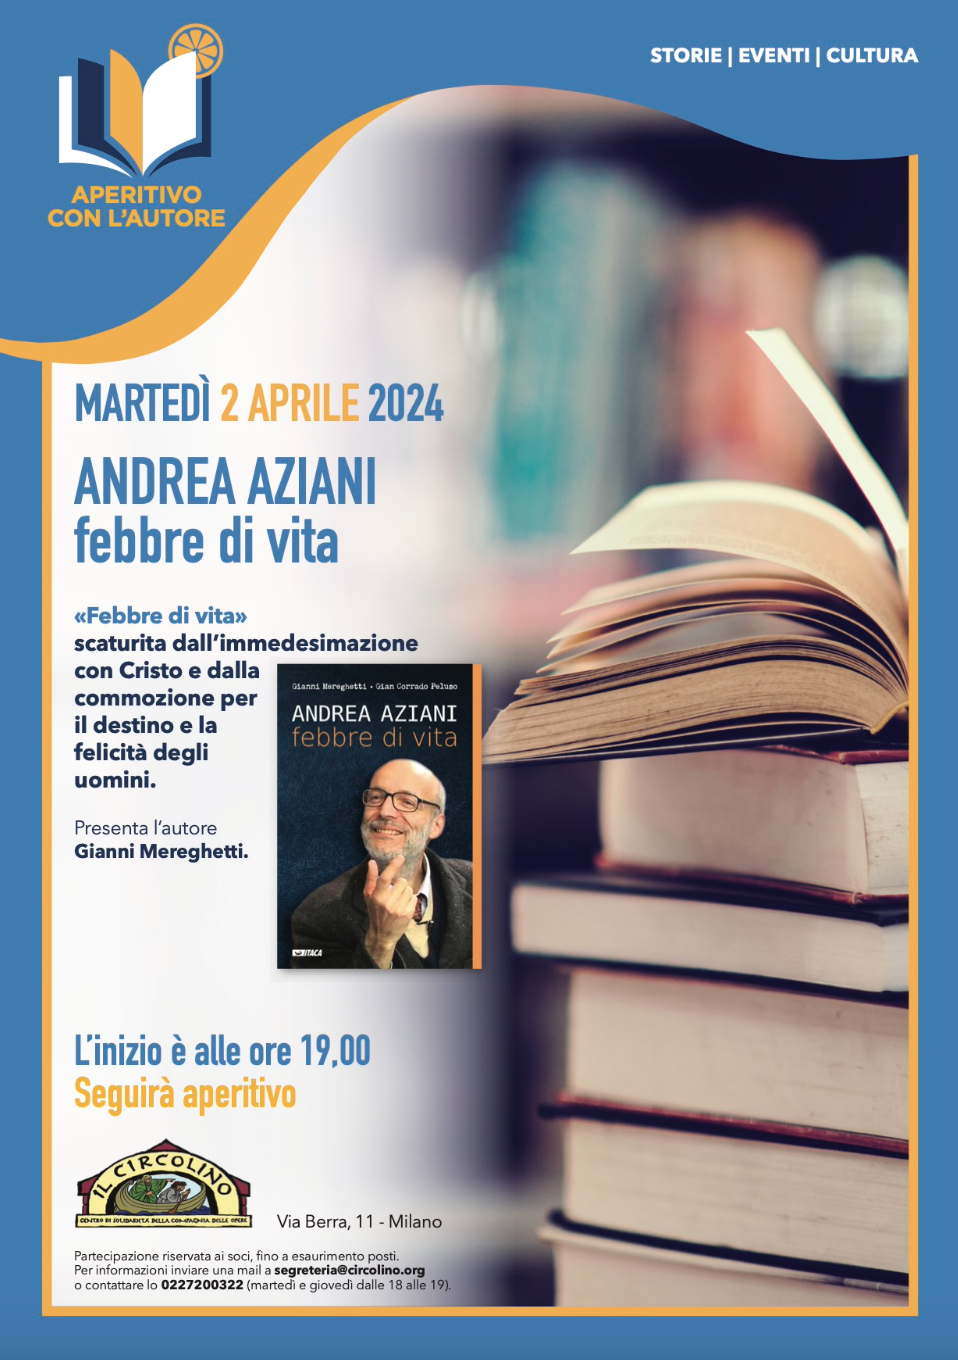 Featured image for “Milano: Andrea Aziani. Febbre di vita, presentazione del libro”